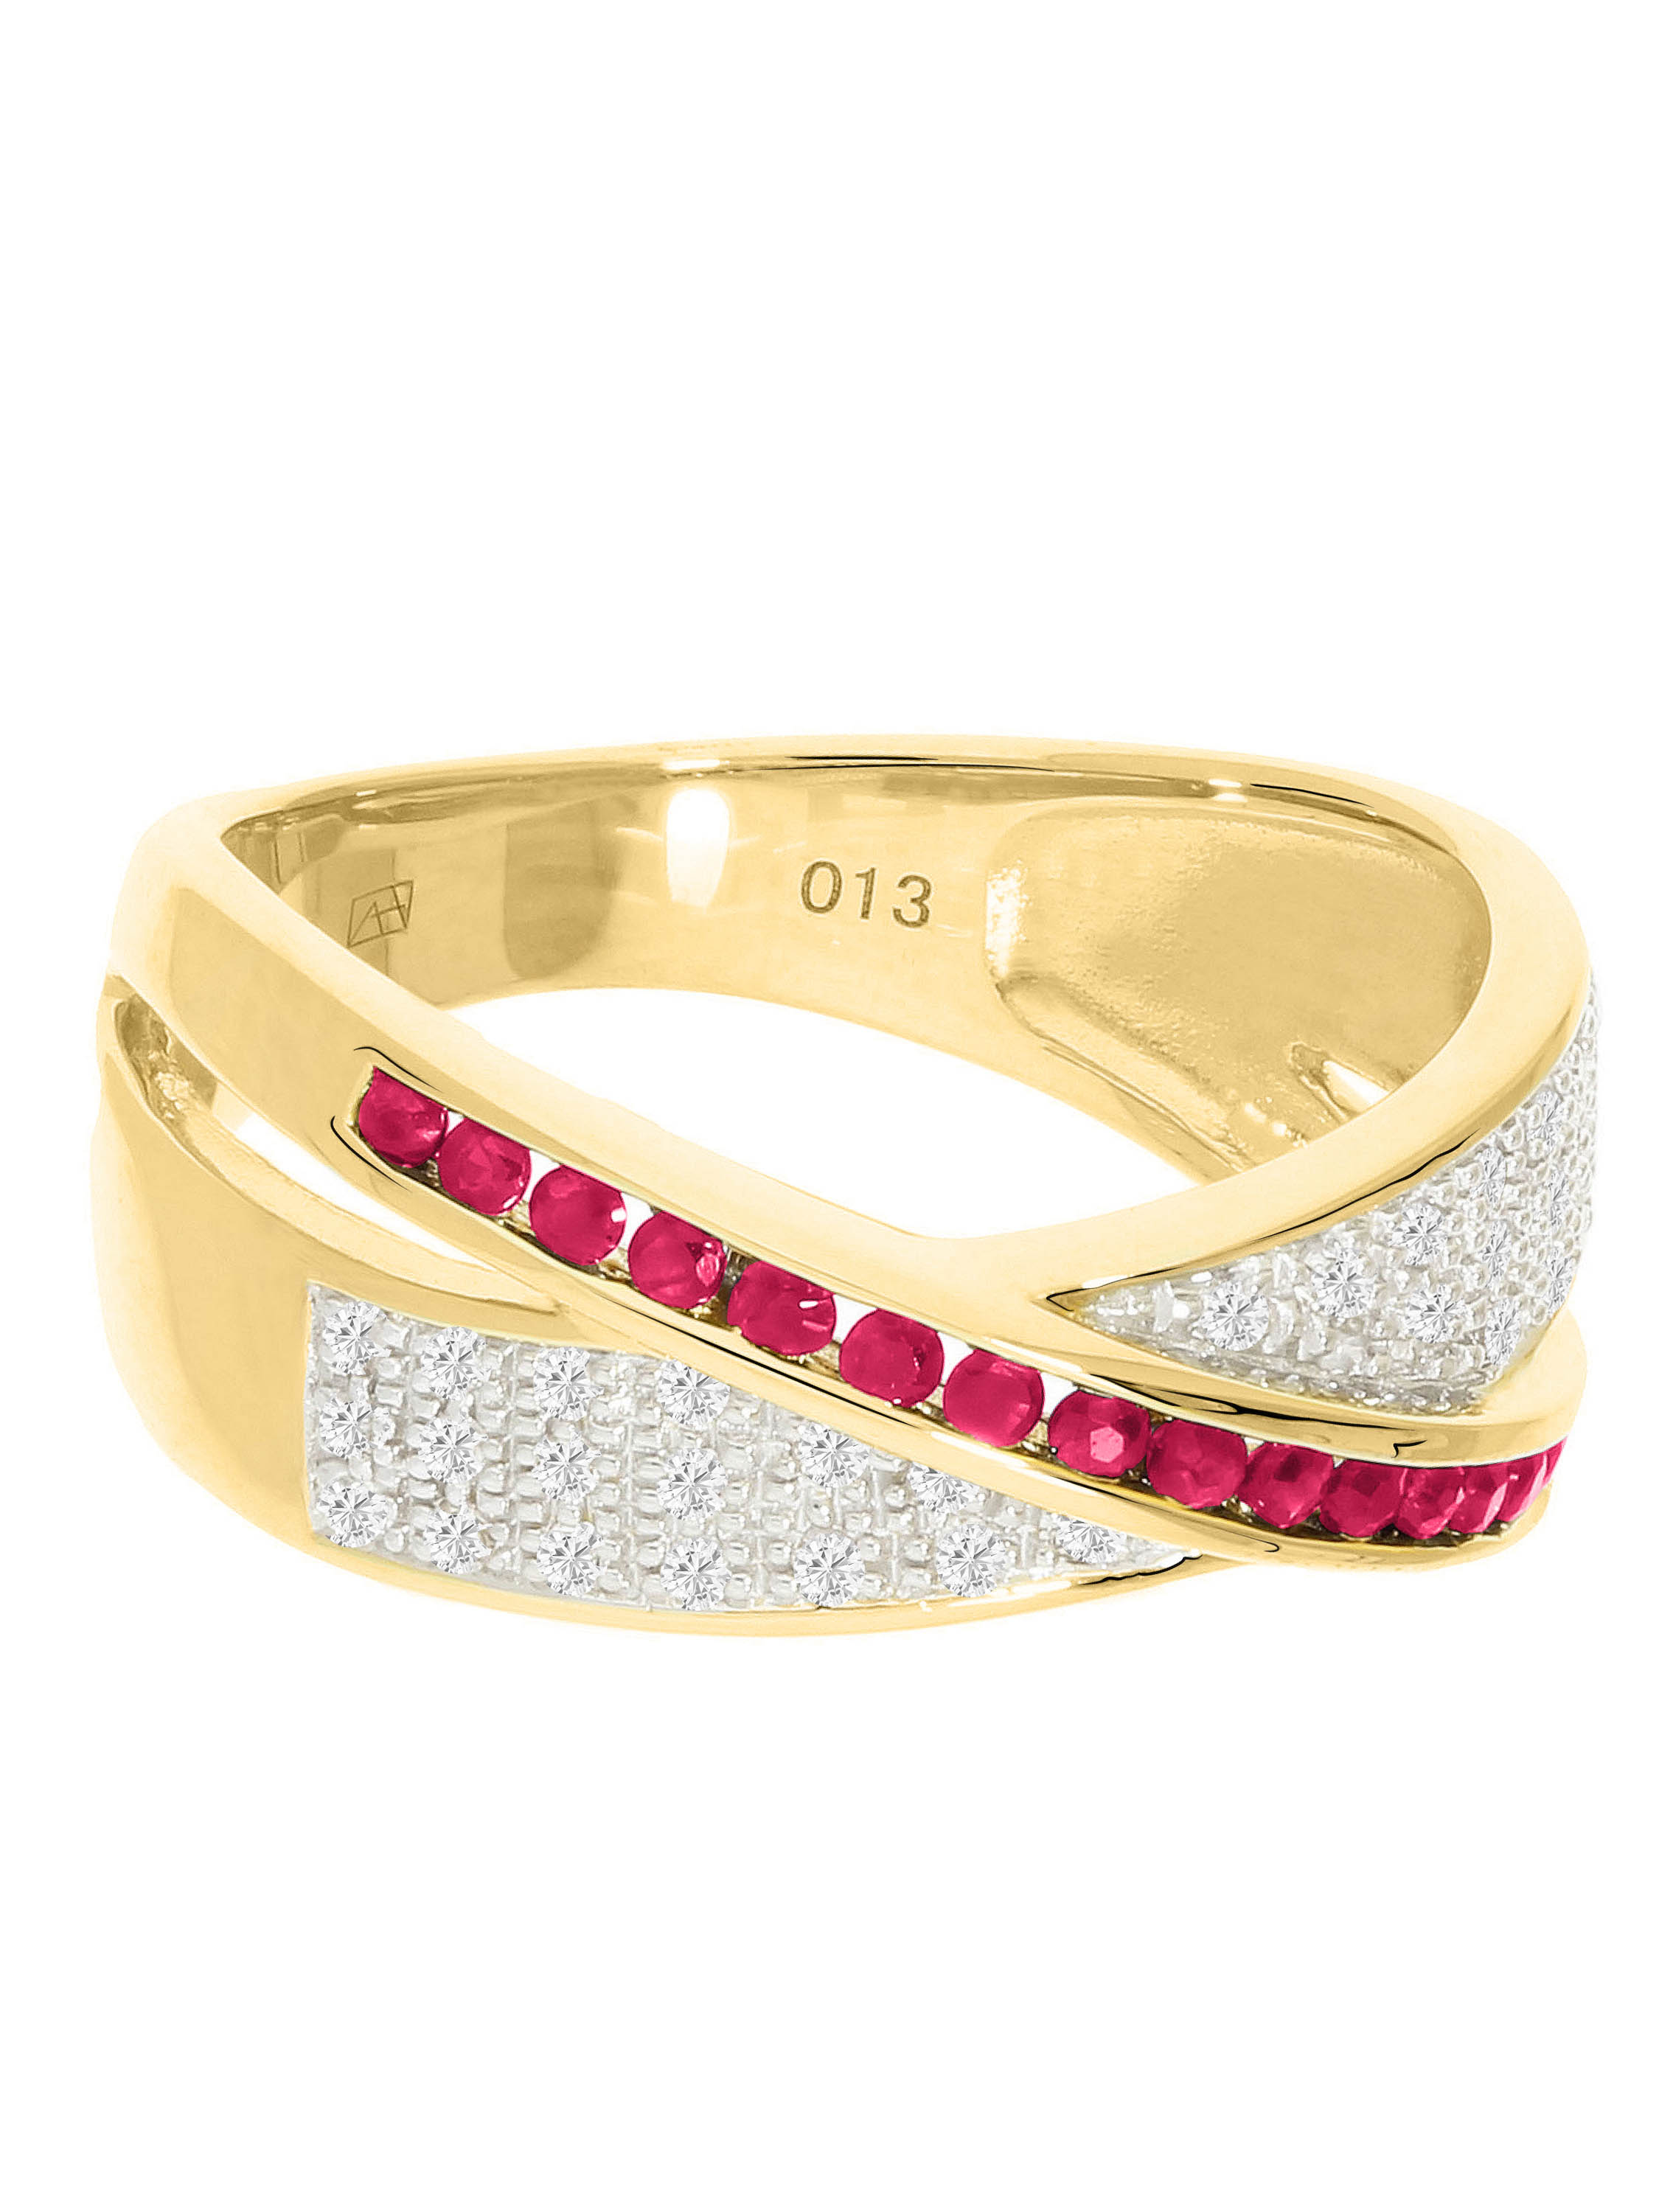 Melvena - Rubin & Diamant Ring mit Edelstein 585 Gold - 0,13ct. - Größe 54